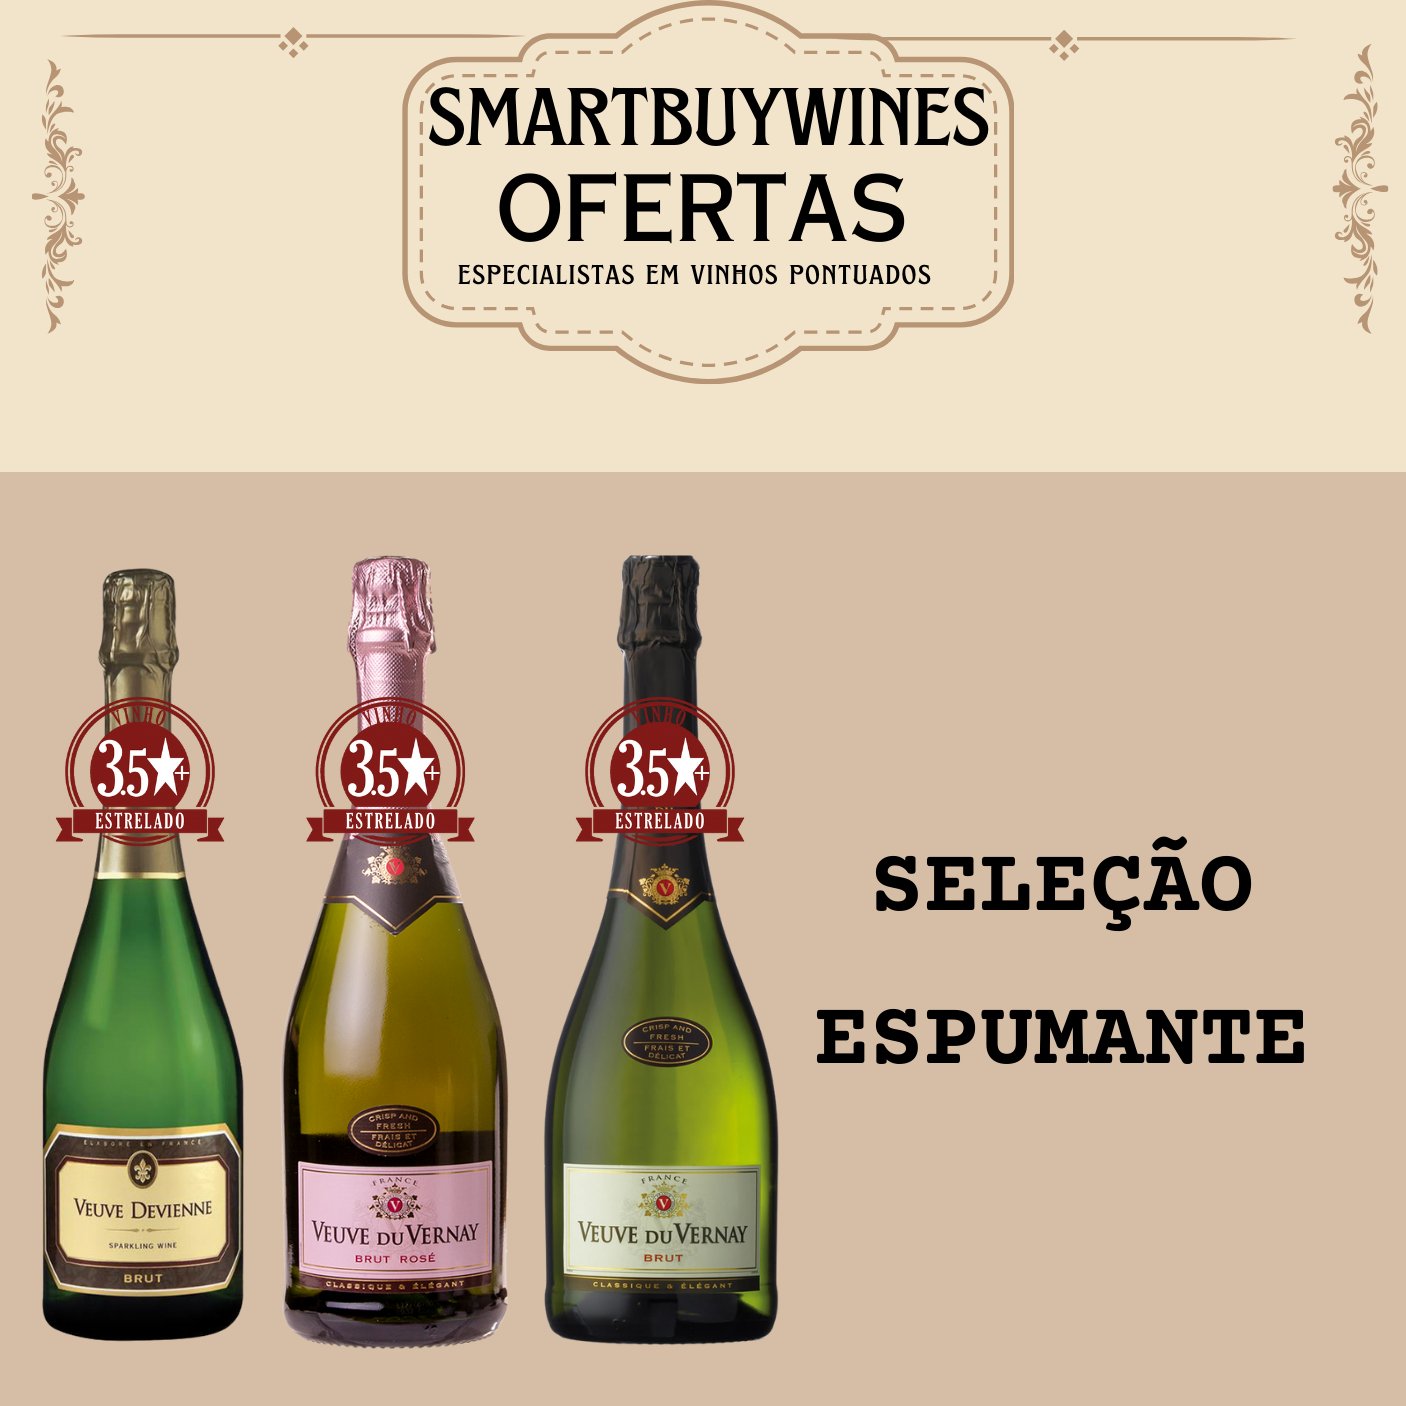 Seleção em oferta - Espumante - caixa de 3 vinhos - SmartBuyWines.com.br